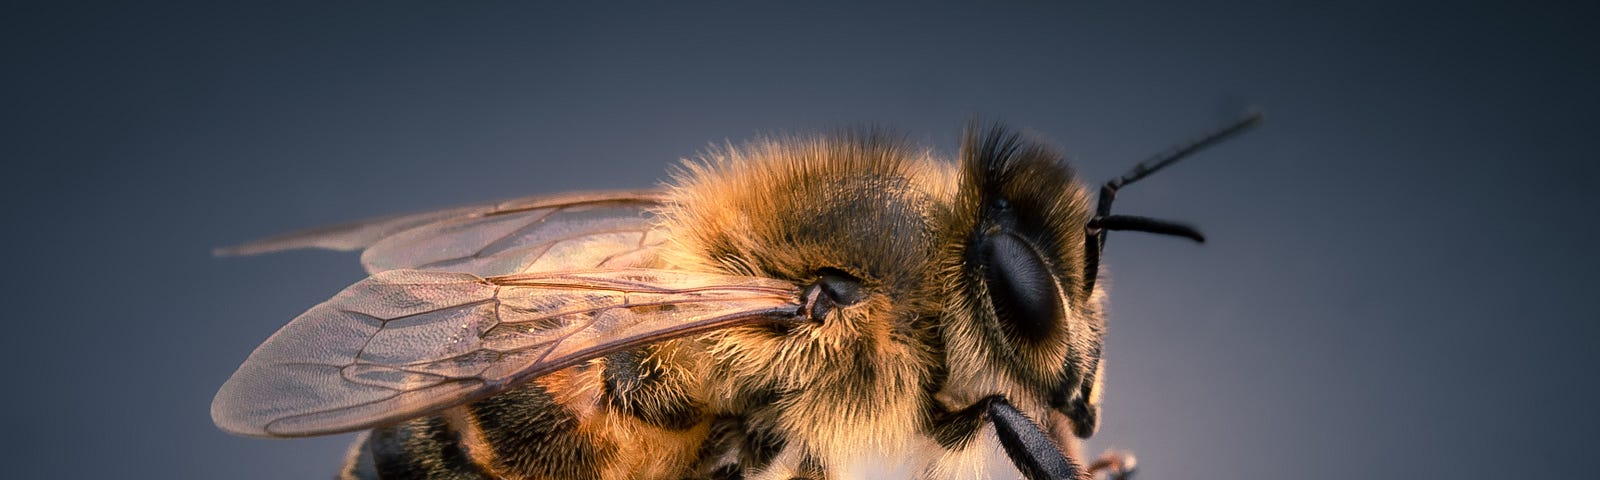 A high resolution photo of a honeybee